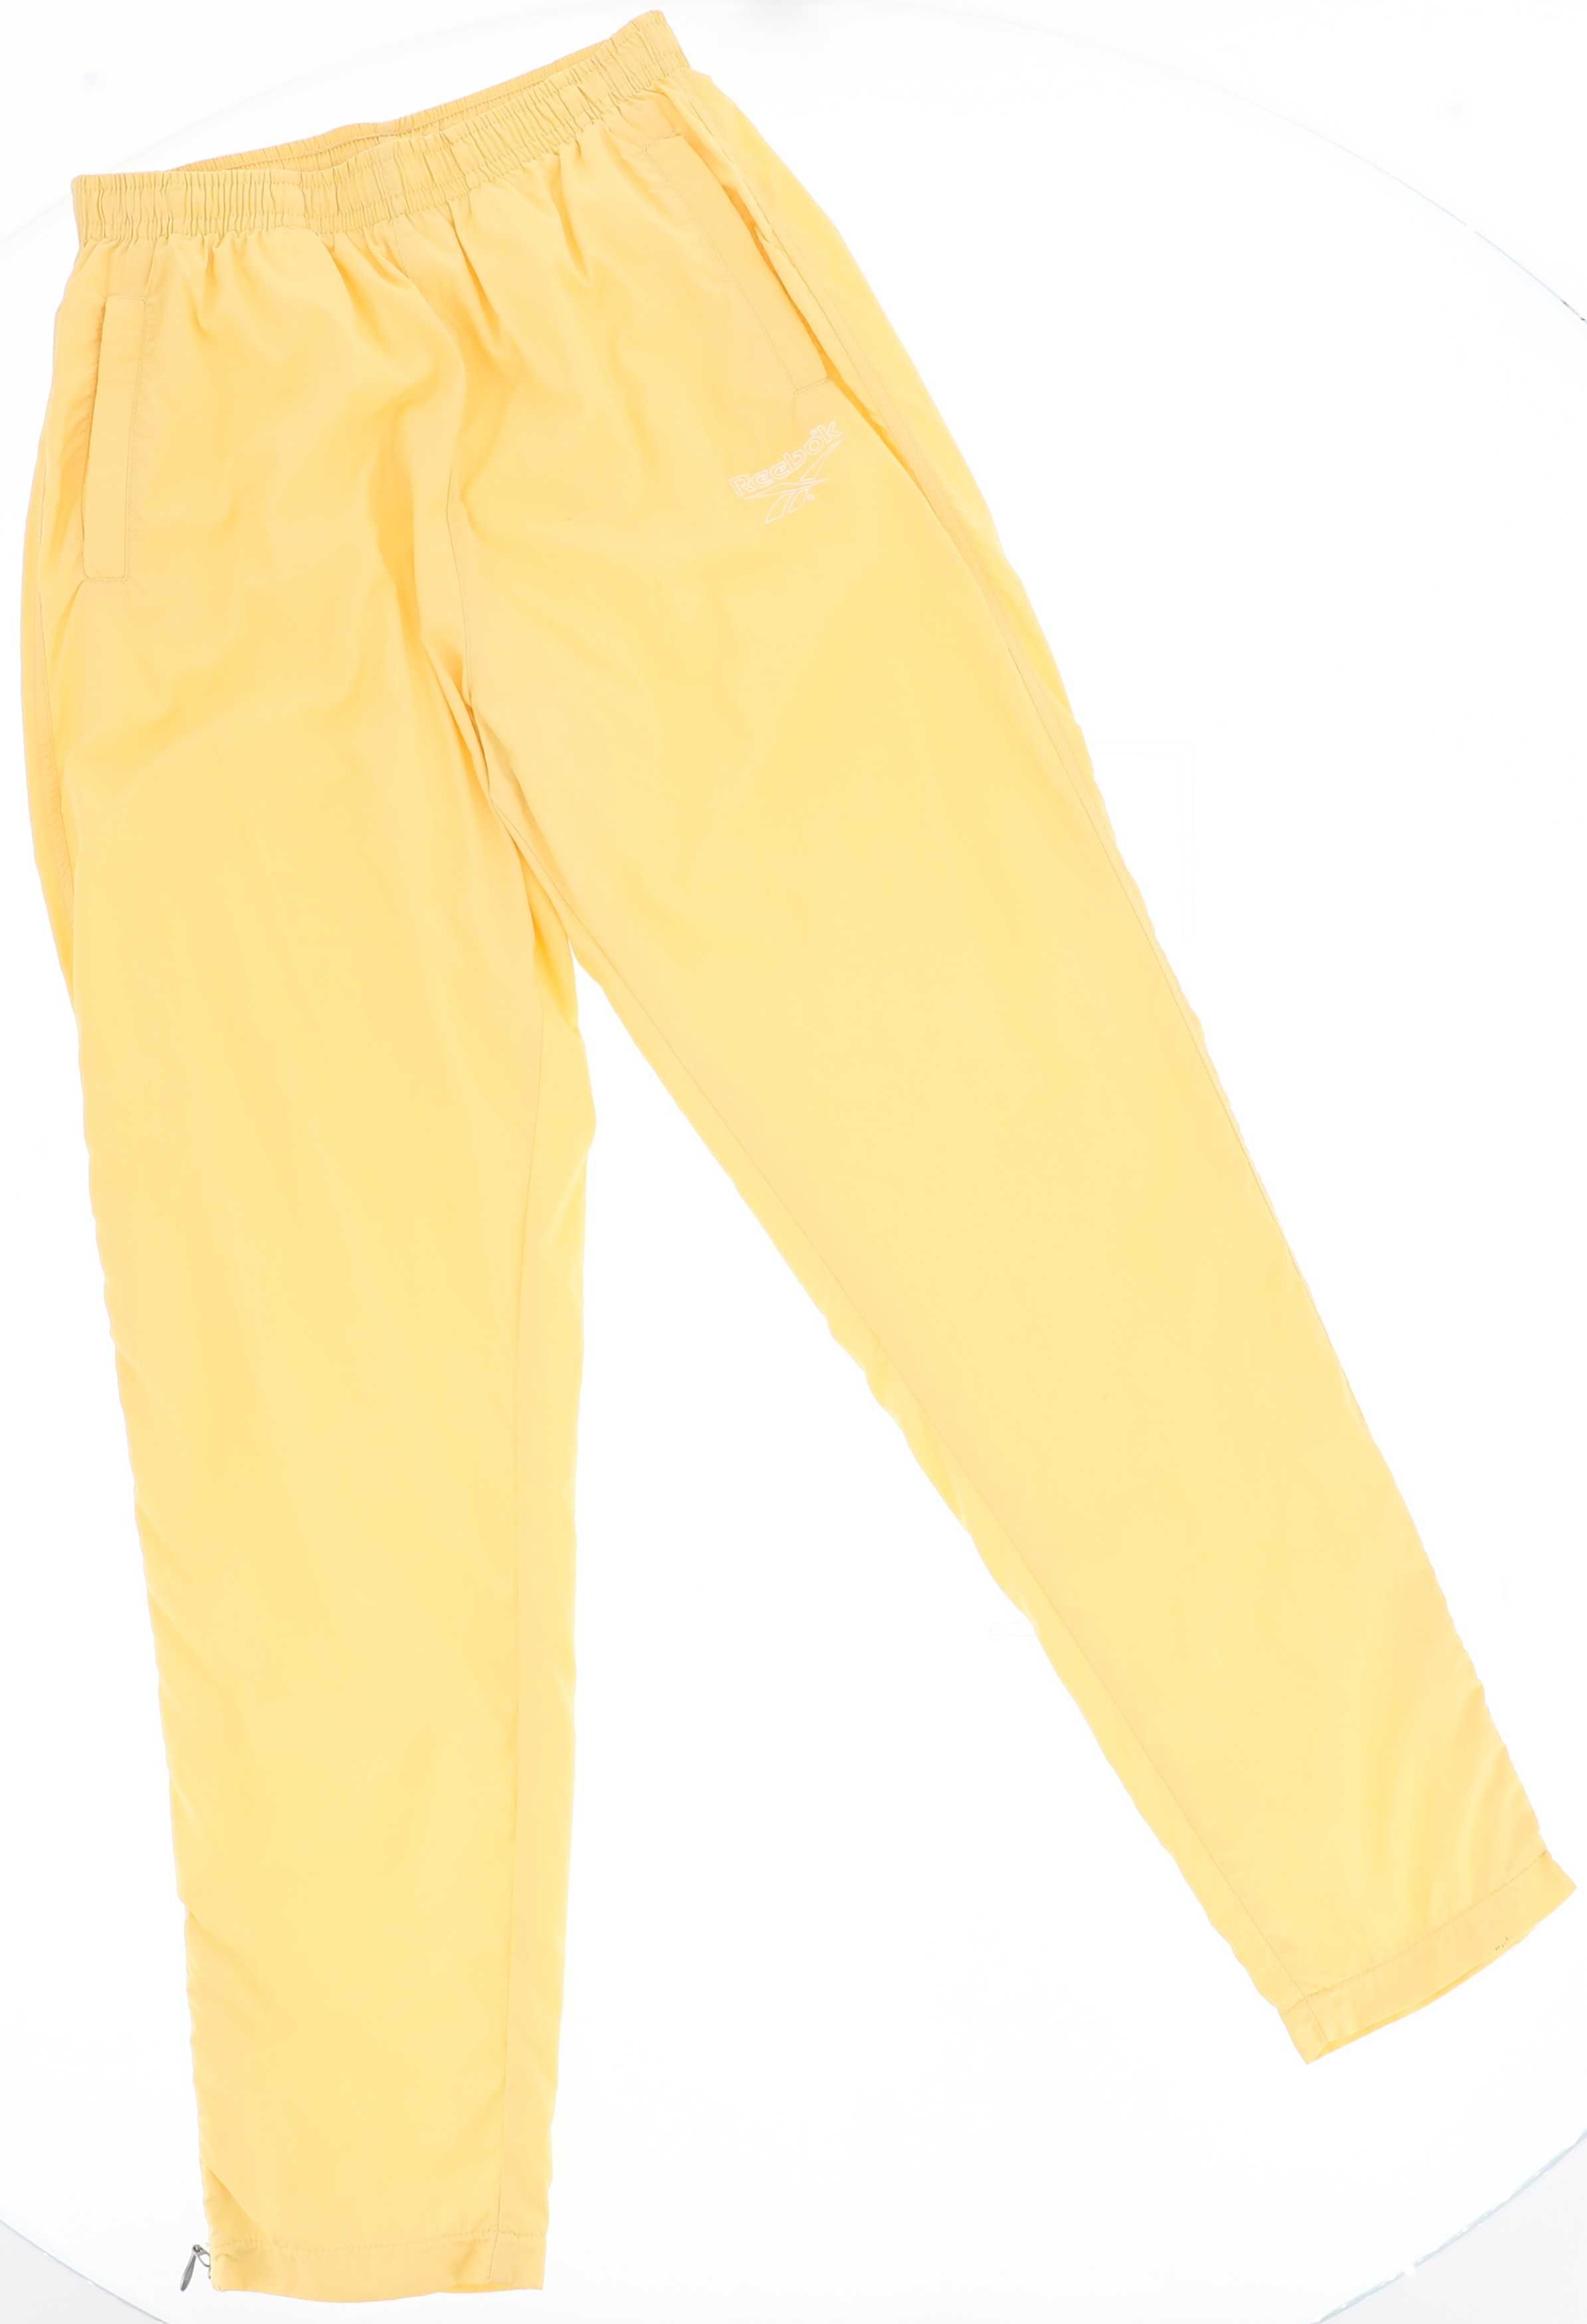 Żółte spodnie sportowe marki Reebok, rozmiar 40